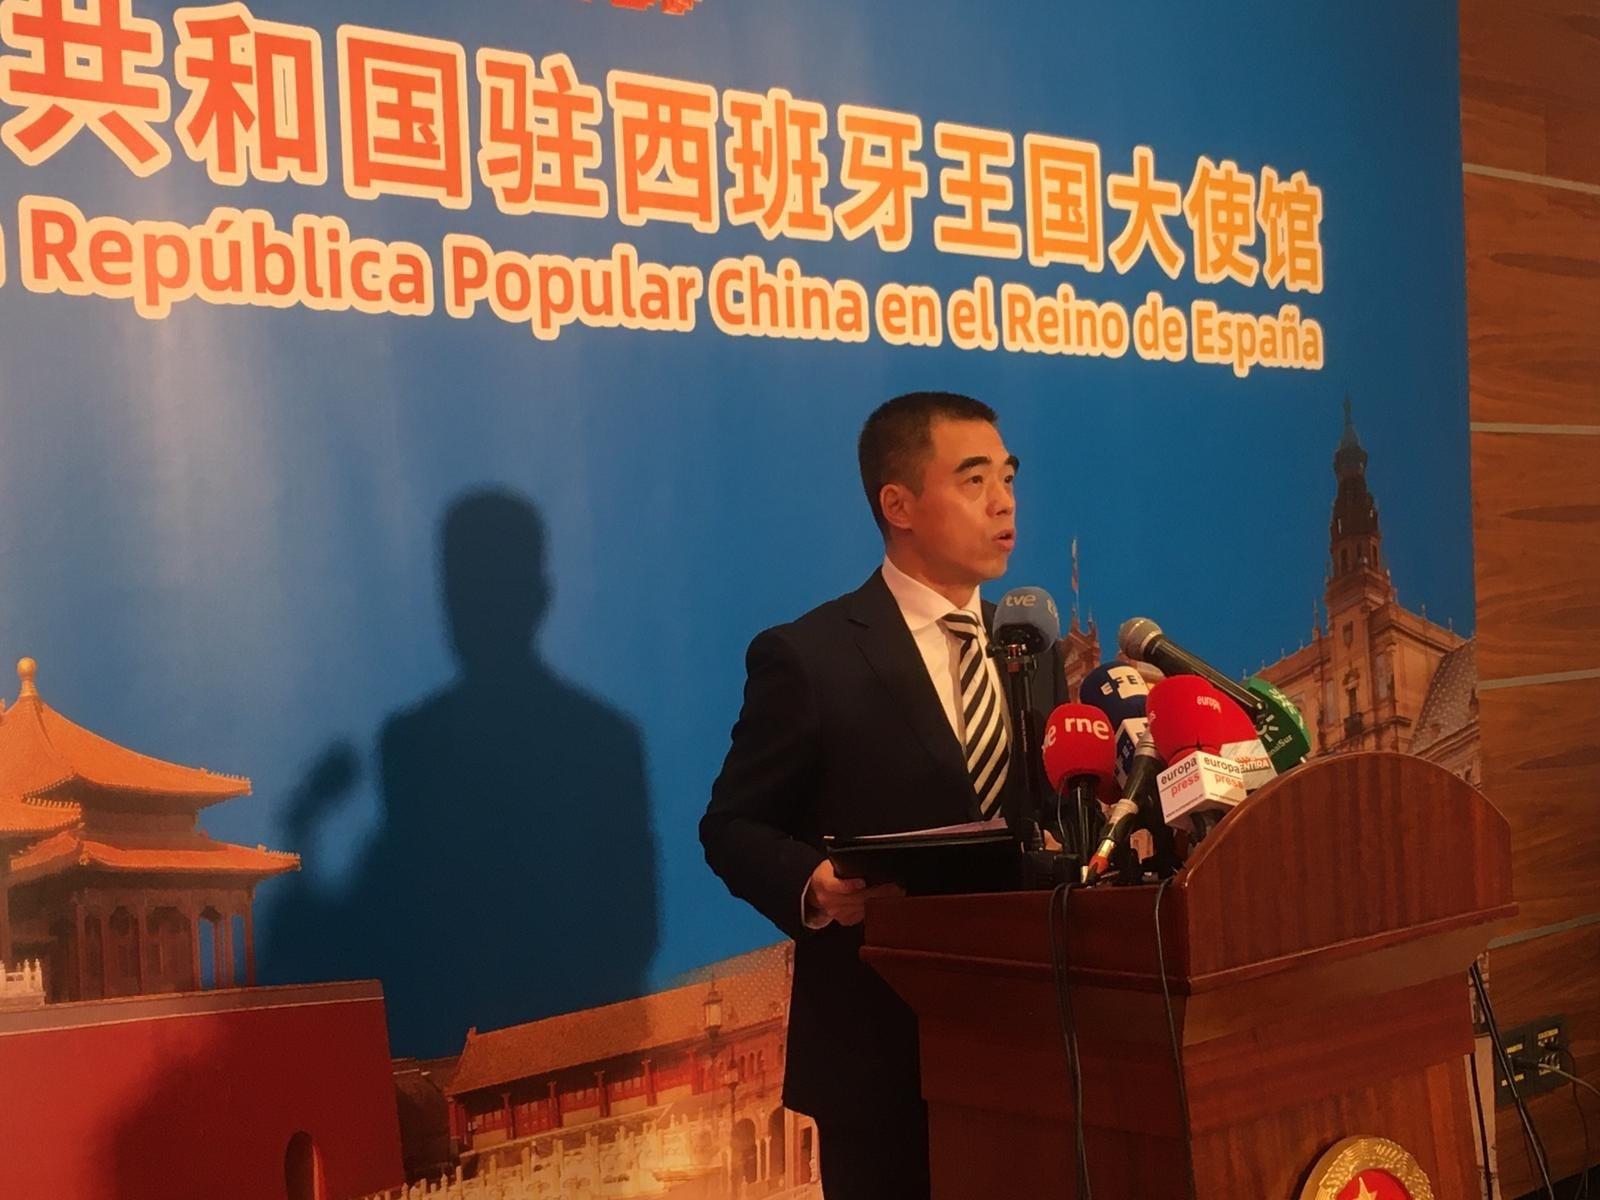 La embajada de China, contundente contra Ortega Smith tras su mensaje xenófobo